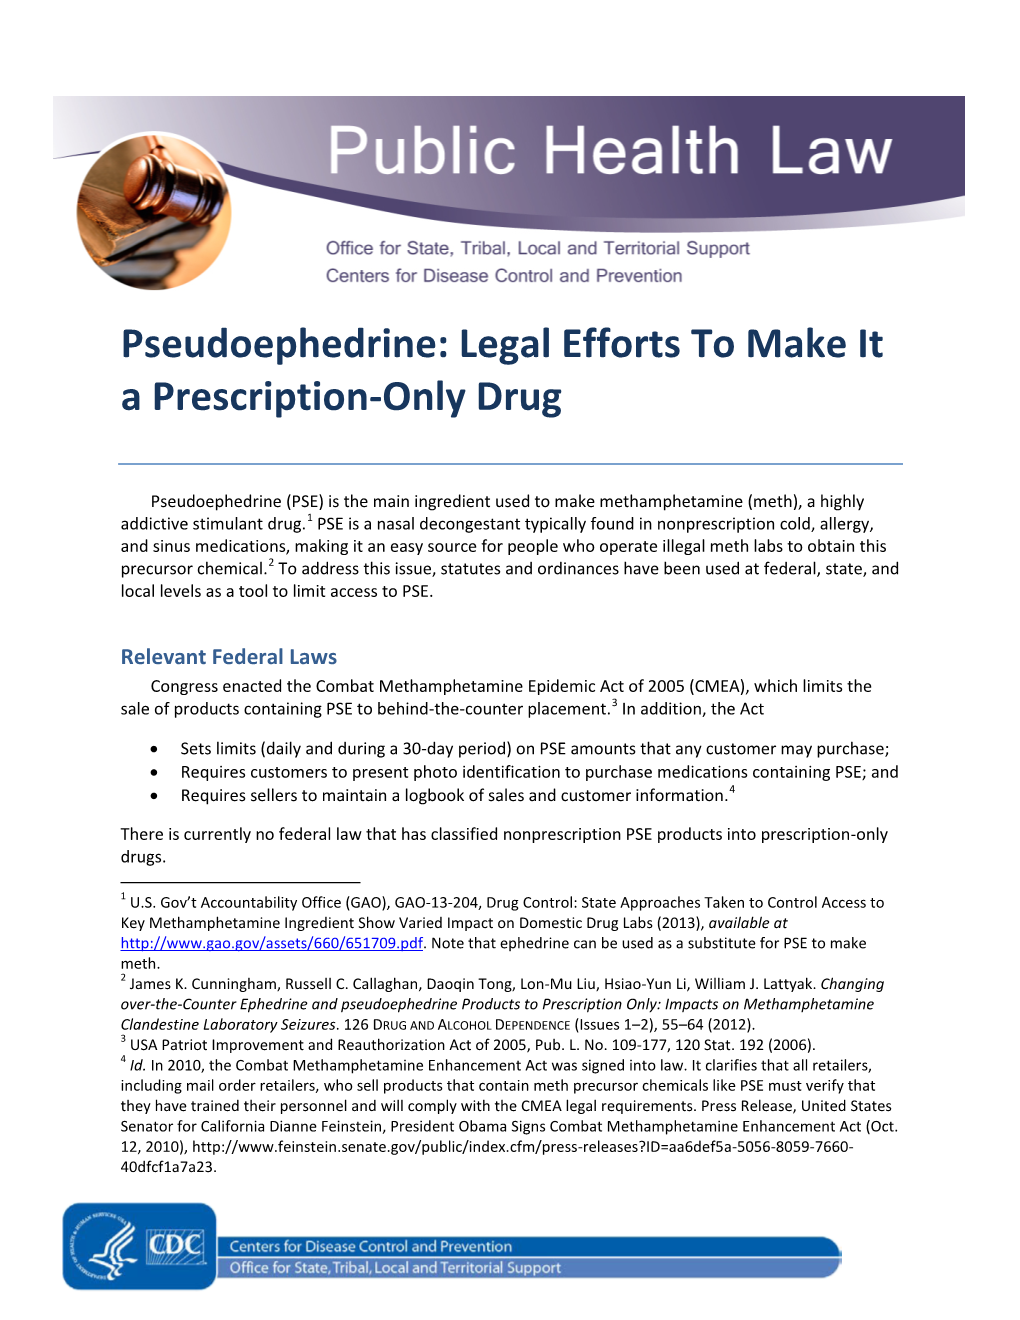 Pseudoephedrine: Legal Efforts to Make It a Prescription-Only Drug